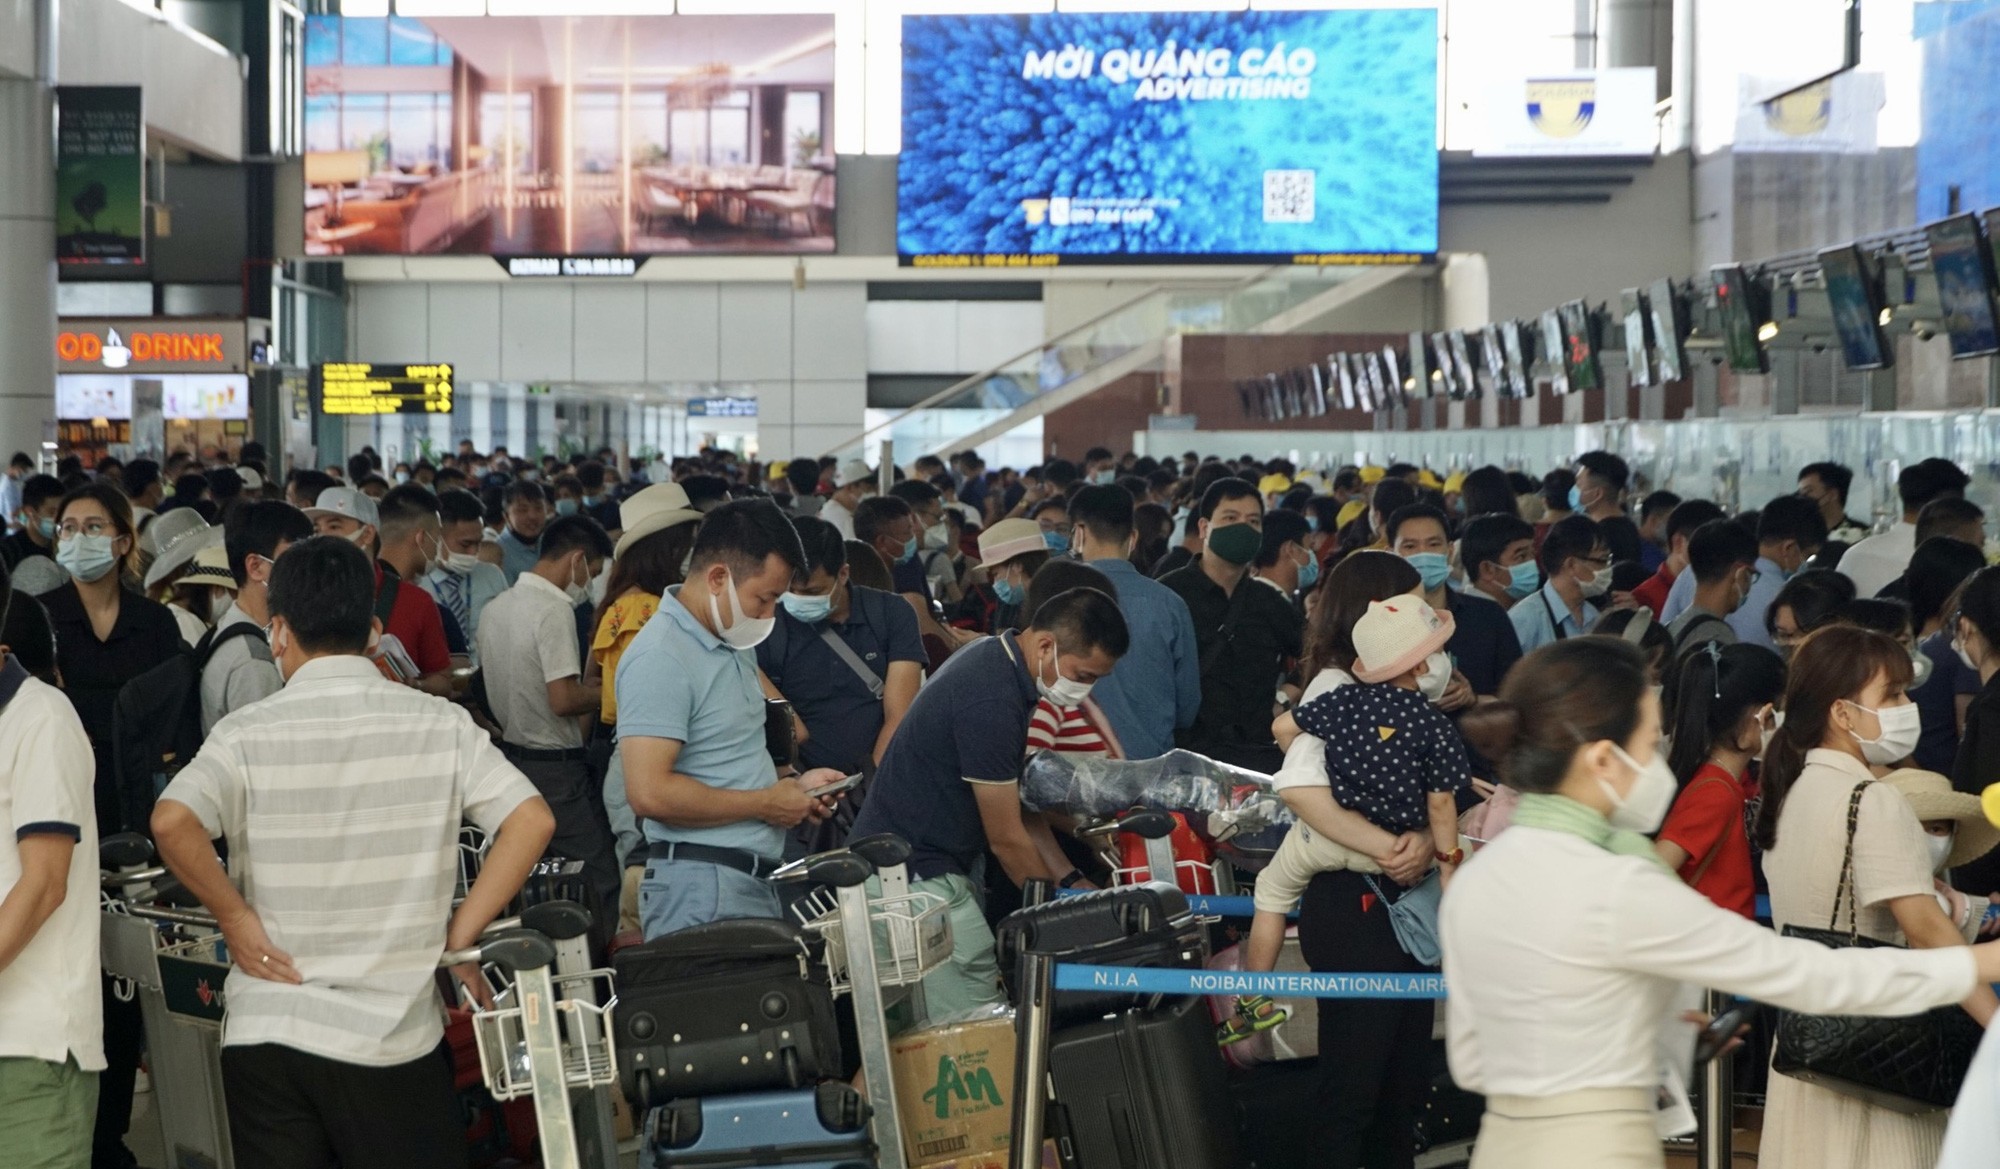 Sân bay Nội Bài dự kiến đón 80.000 khách/ngày dịp nghỉ lễ 2/9, cần lưu ý những gì khi đi máy bay? - Ảnh 1.